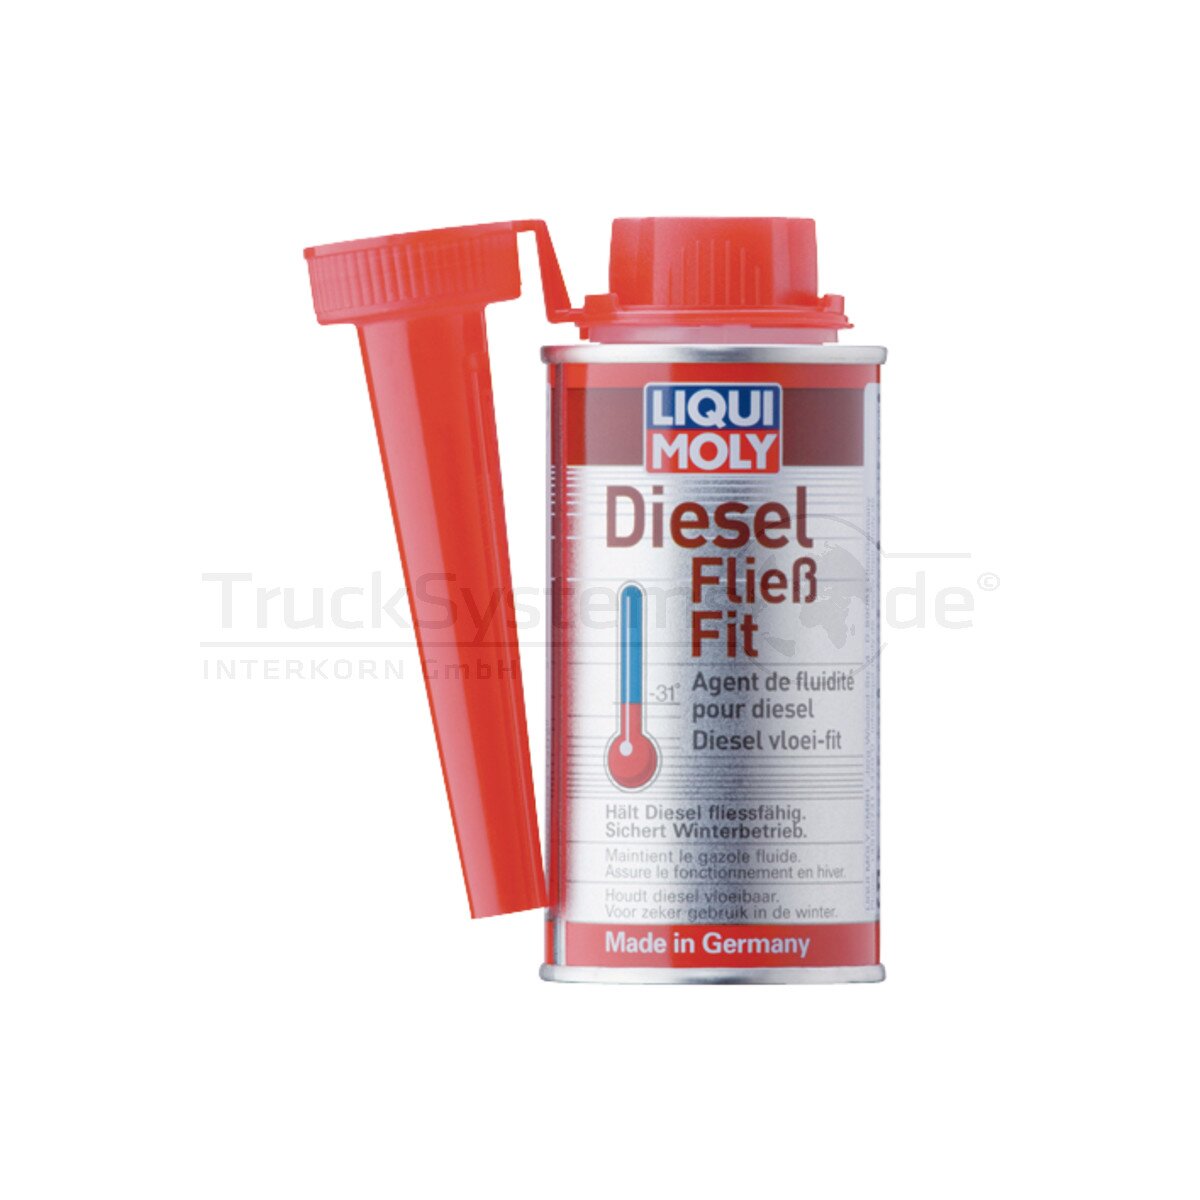 LIQUI MOLY Diesel Fließ-Fit K Winterzusatz 1l - 5131, 15,99 €